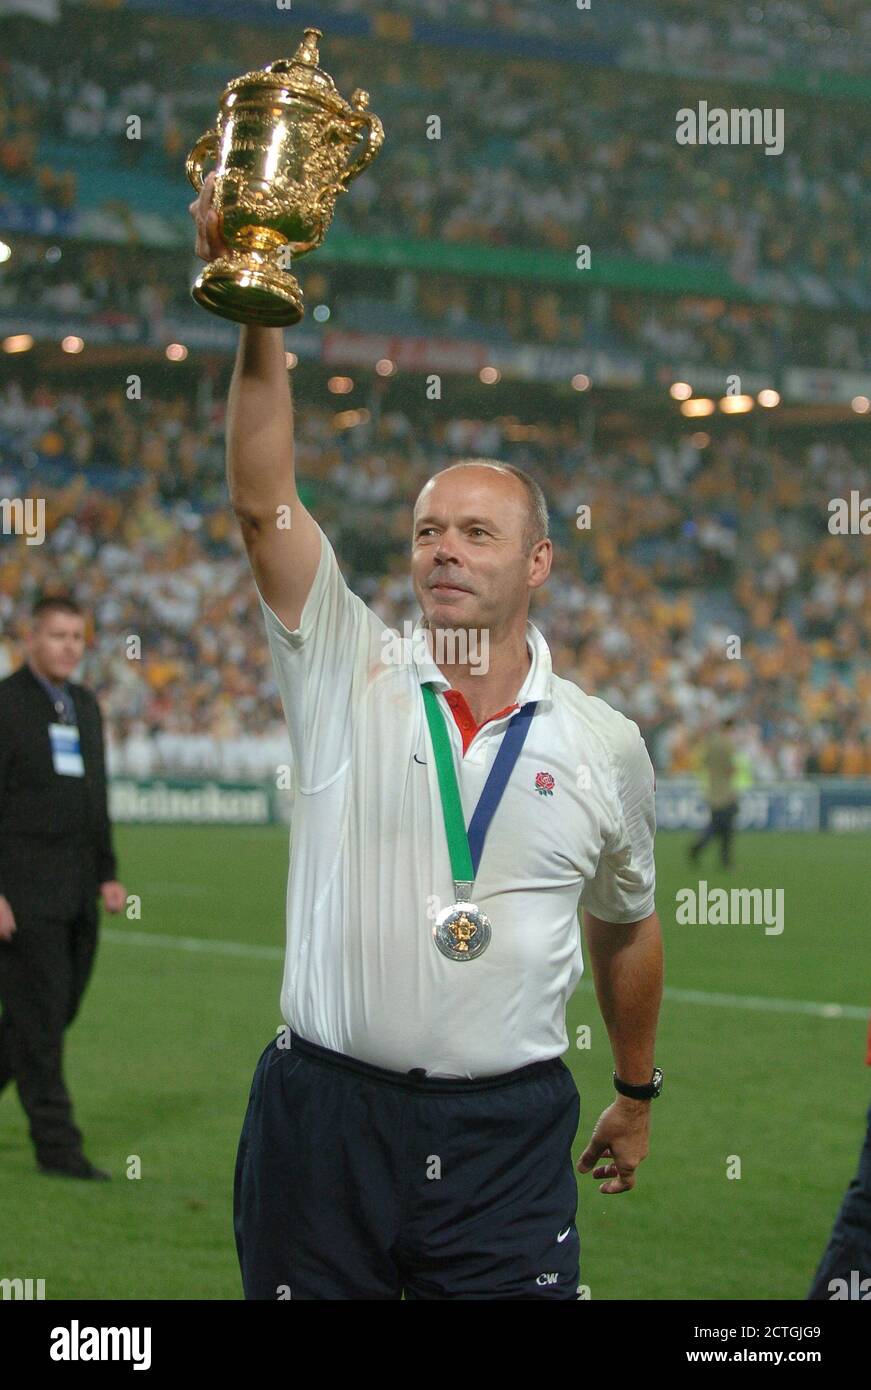 Clive Wilkinson si aggiudicherà il trofeo mentre l'Inghilterra vincerà la Coppa del mondo di Rugby 2003 contro l'Australia. IMMAGINE DI CREDITO : © MARK PAIN / ALAMY STOCK FOTO Foto Stock